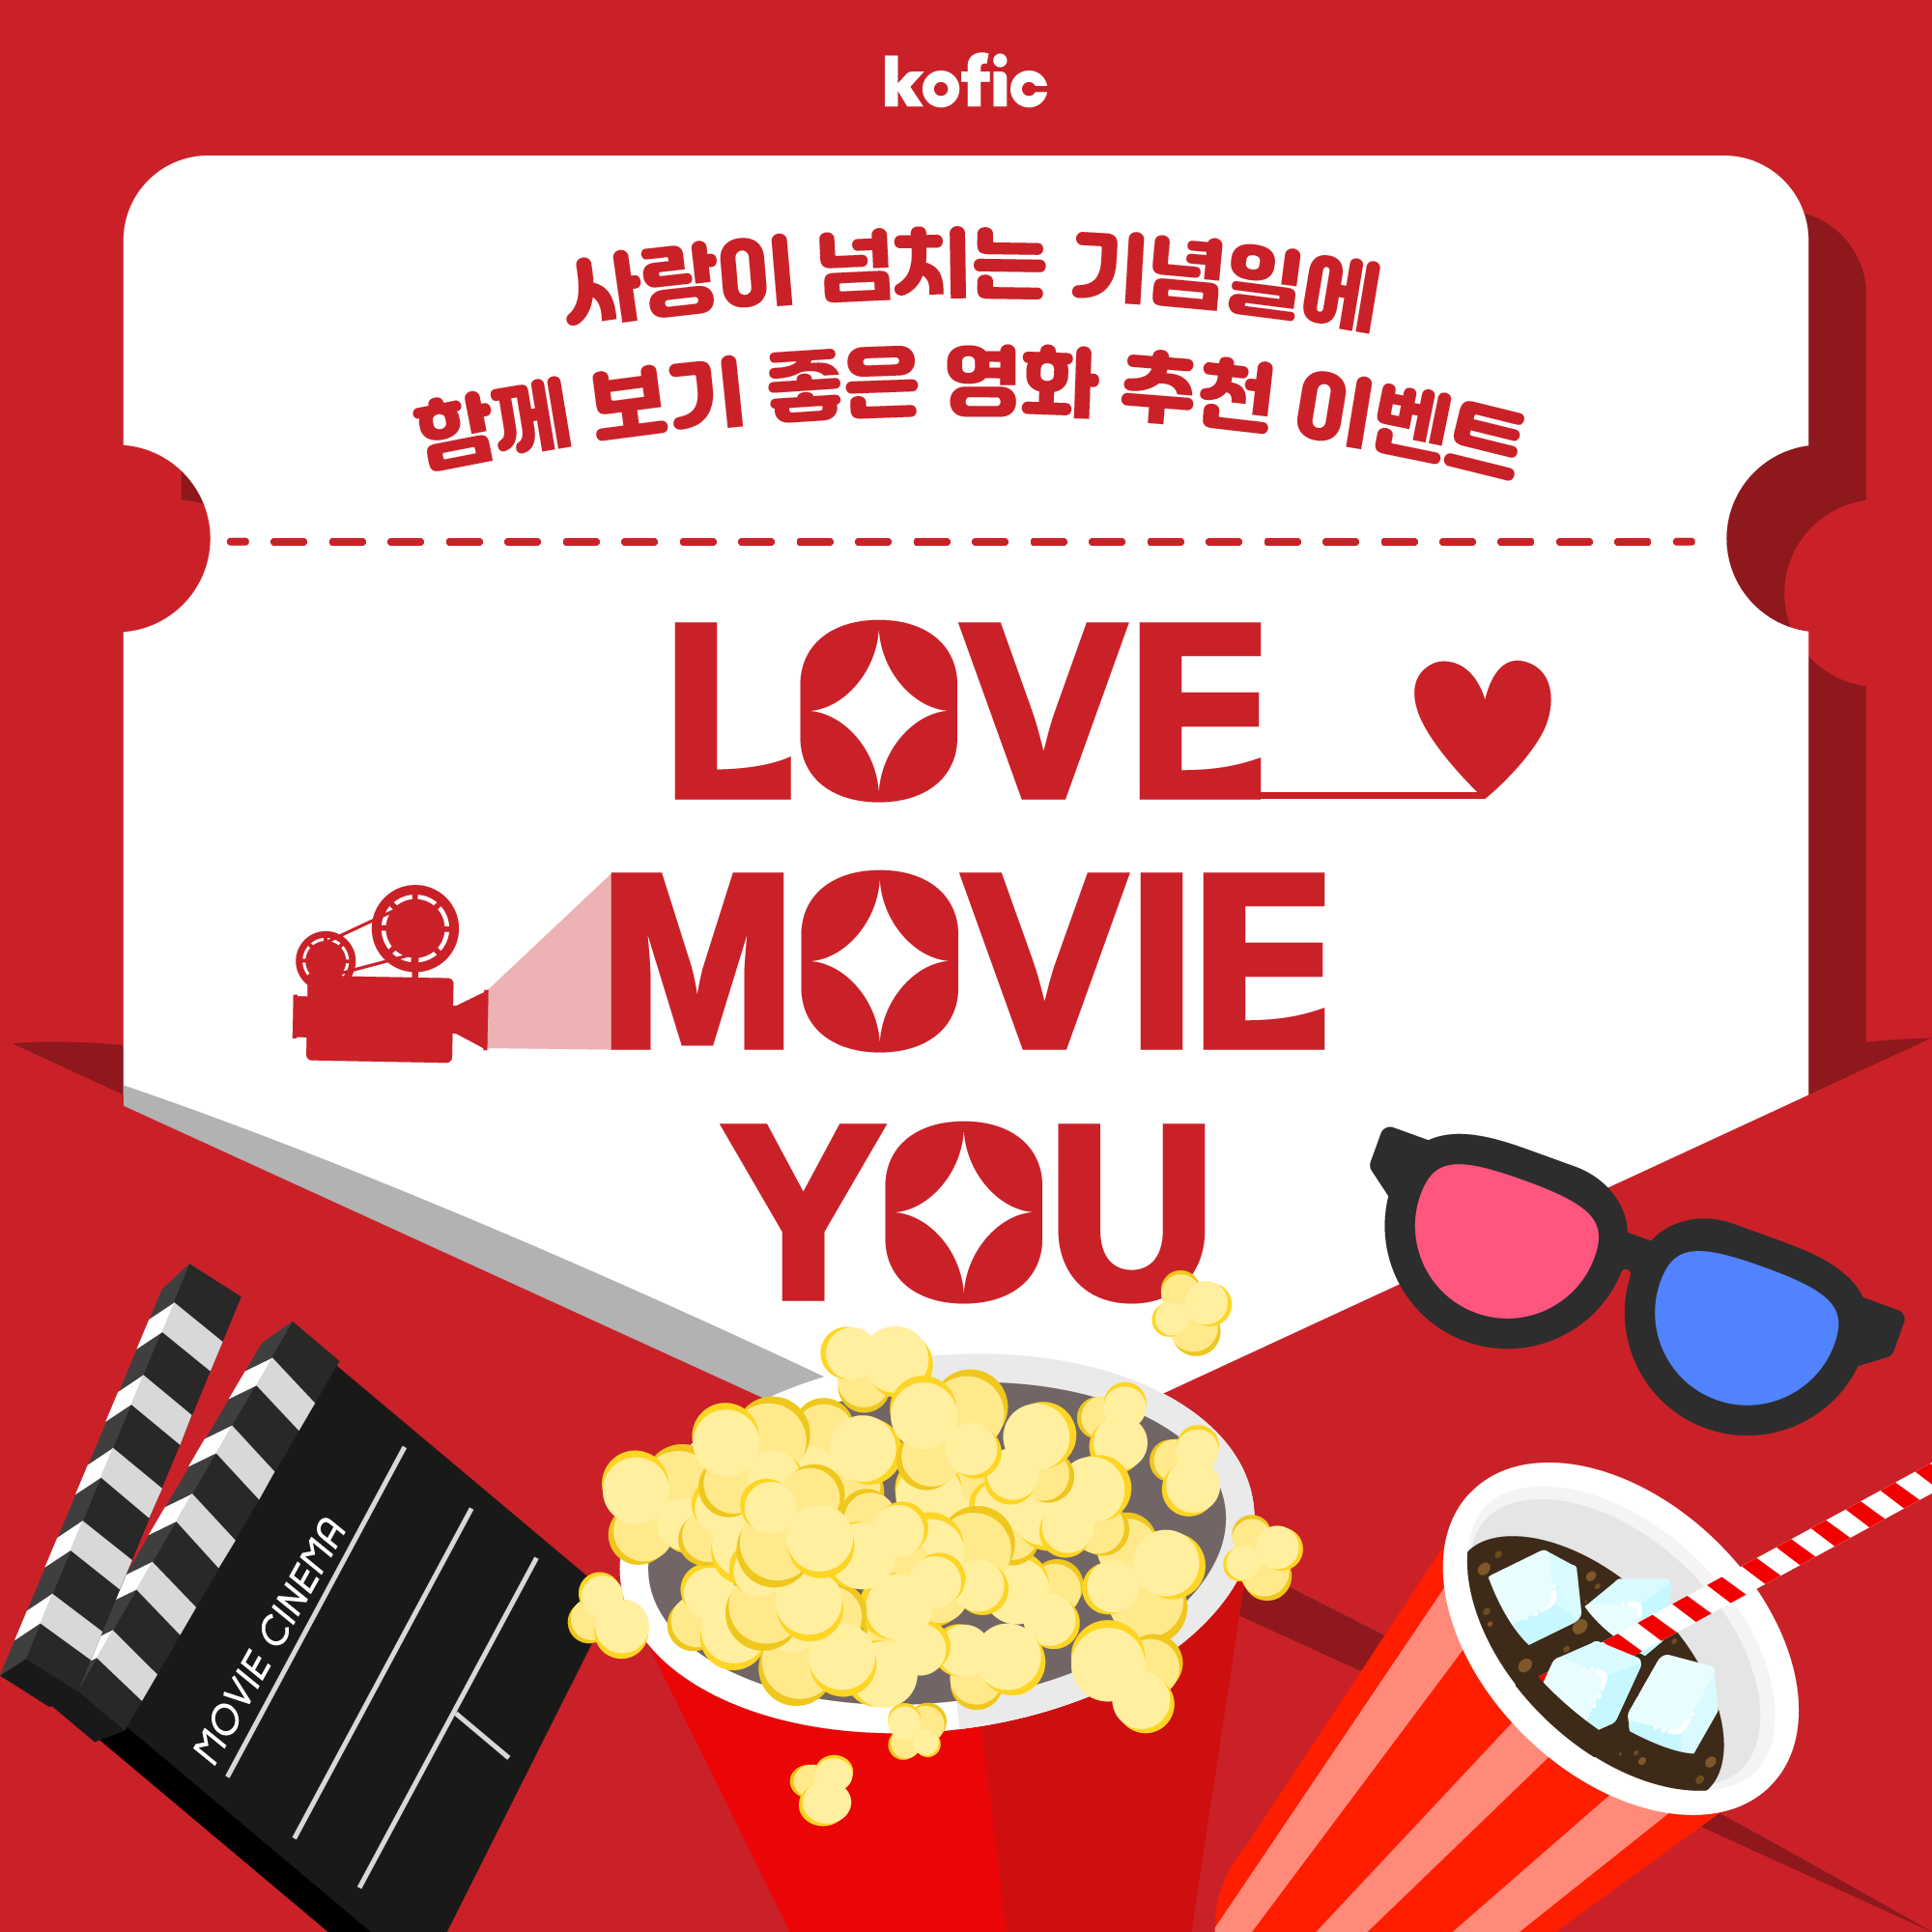 [이벤트] 사랑이 넘치는 기념일에 함께보기 좋은 한국영화 추천 이벤트!